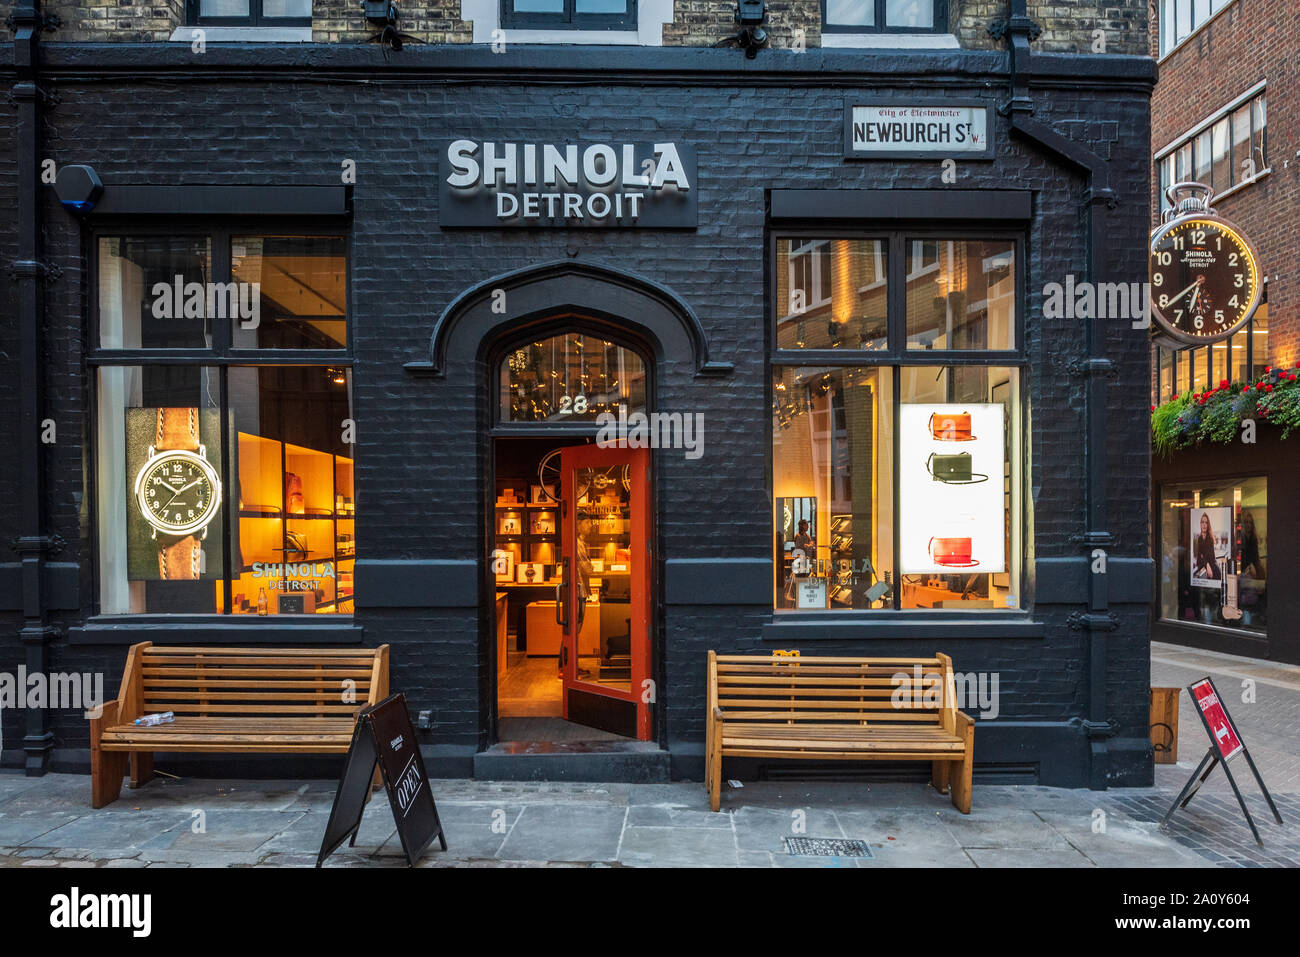 Negozio Shinola Londra - il marchio Shinola guarda e negozio di accessori in Newburgh Street a Londra nel quartiere di Soho. Foto Stock